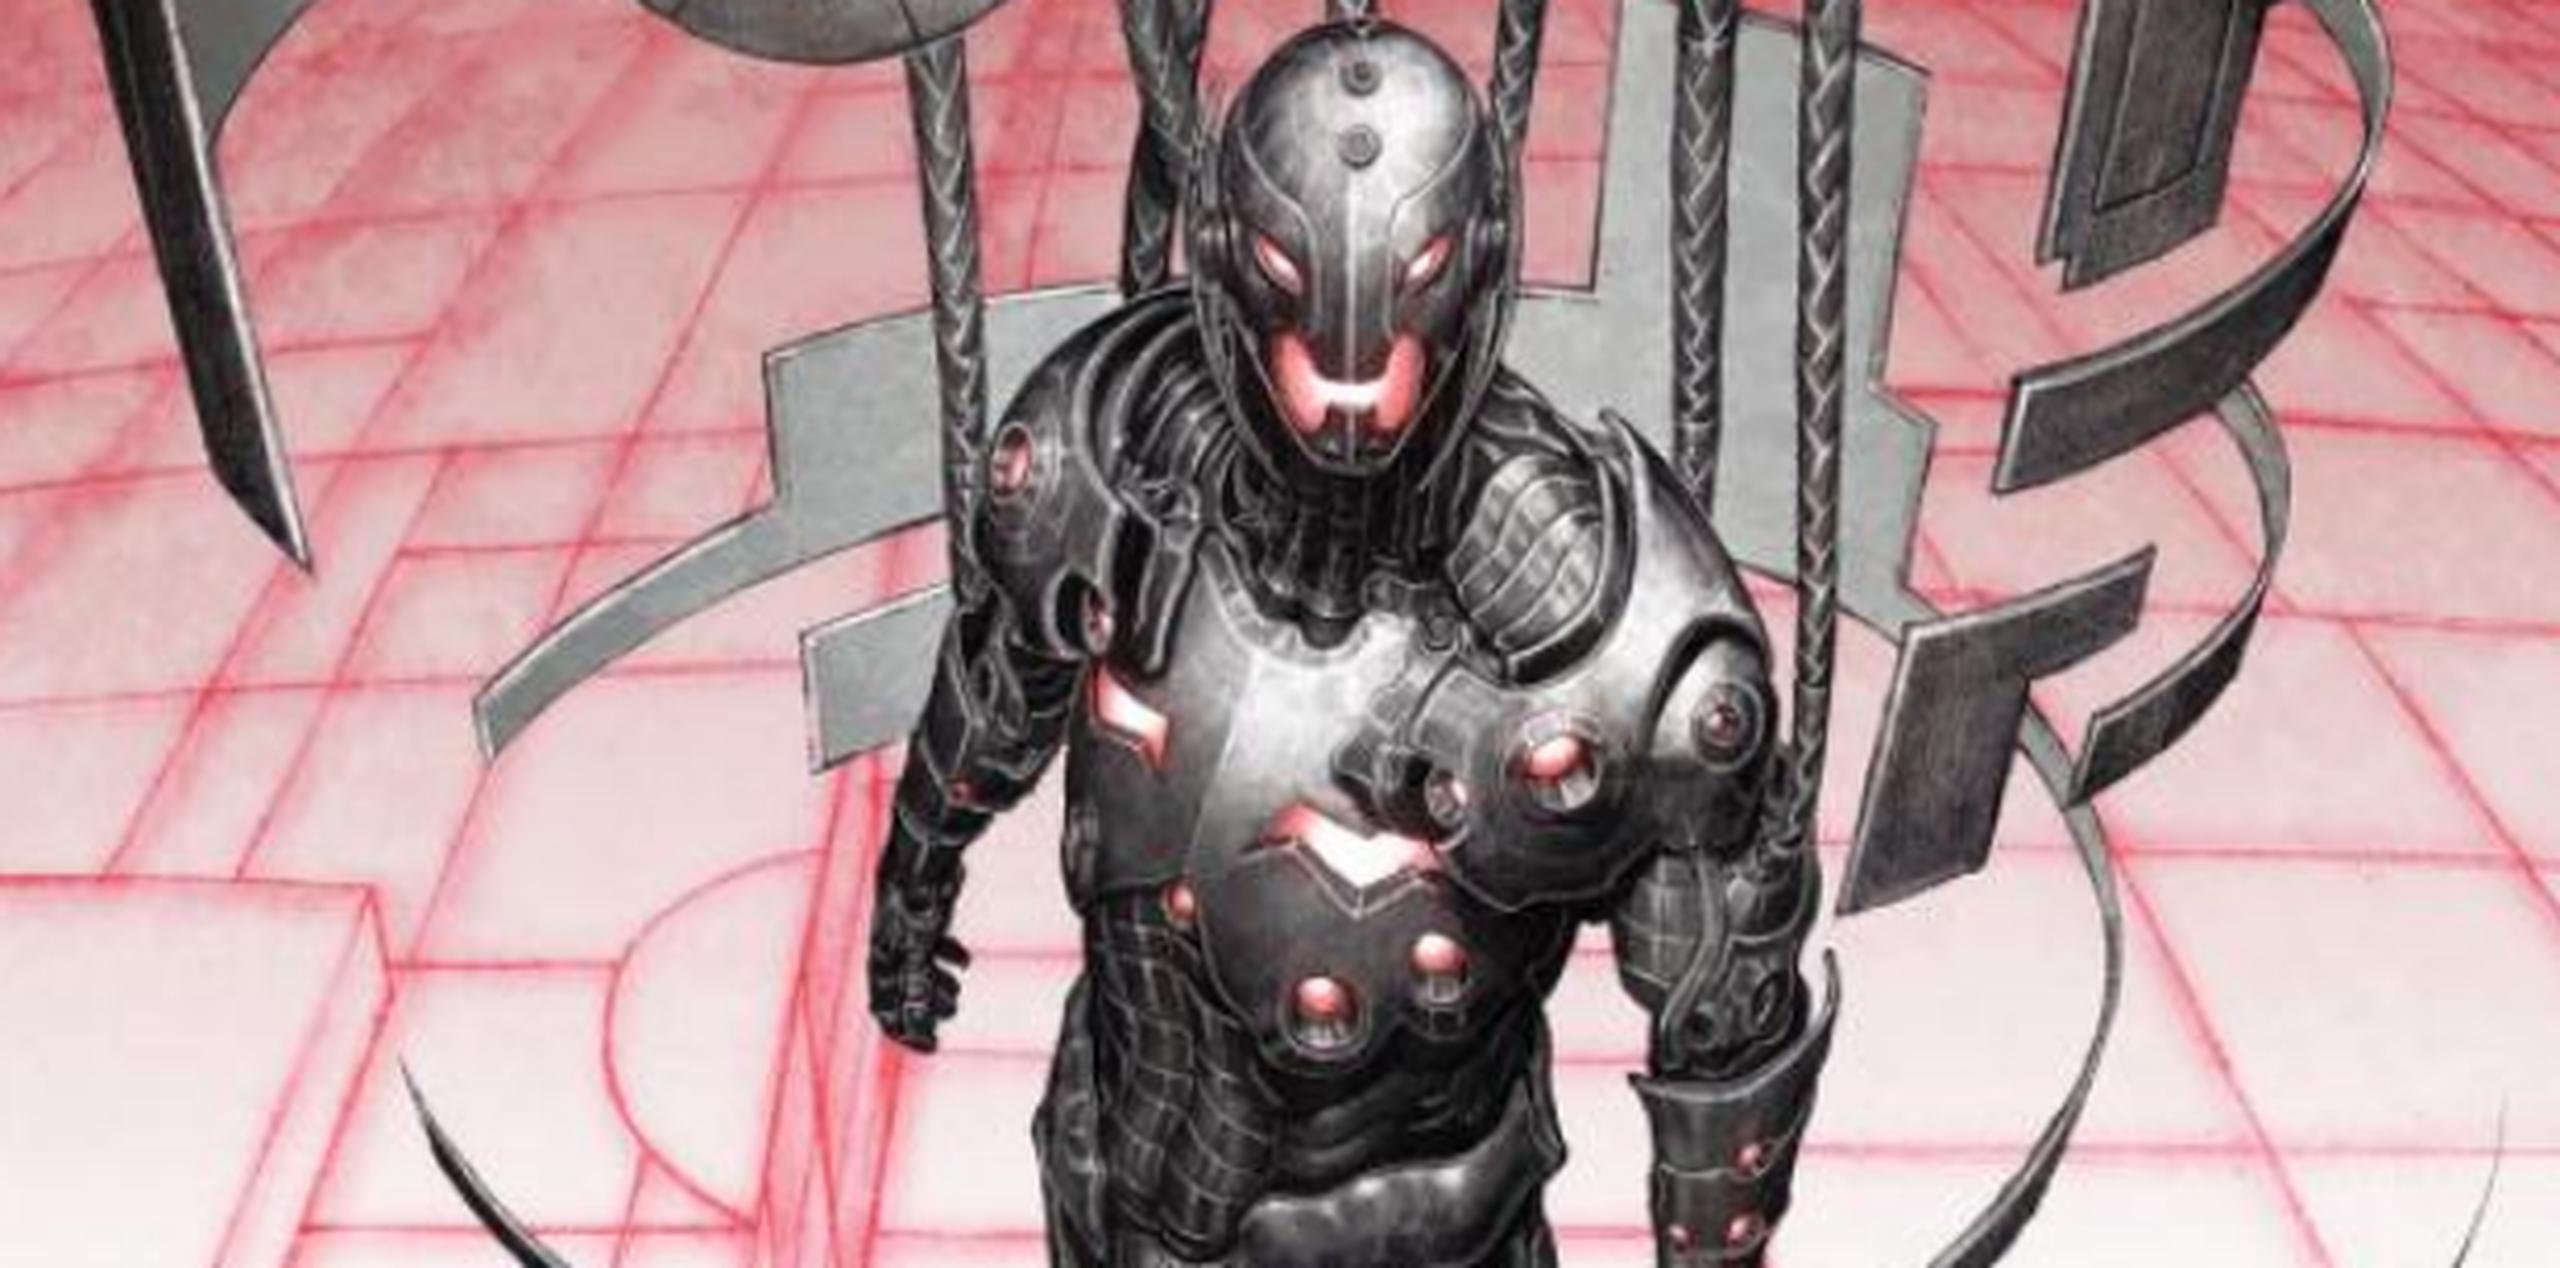 Ultron es un robot creado por Hank Pym, uno de los primeros Avengers y quien tendrá su propia película (Ant-Man) en el 2015, que está en constante evolución y tiene conciencia propia. (marvel.com)